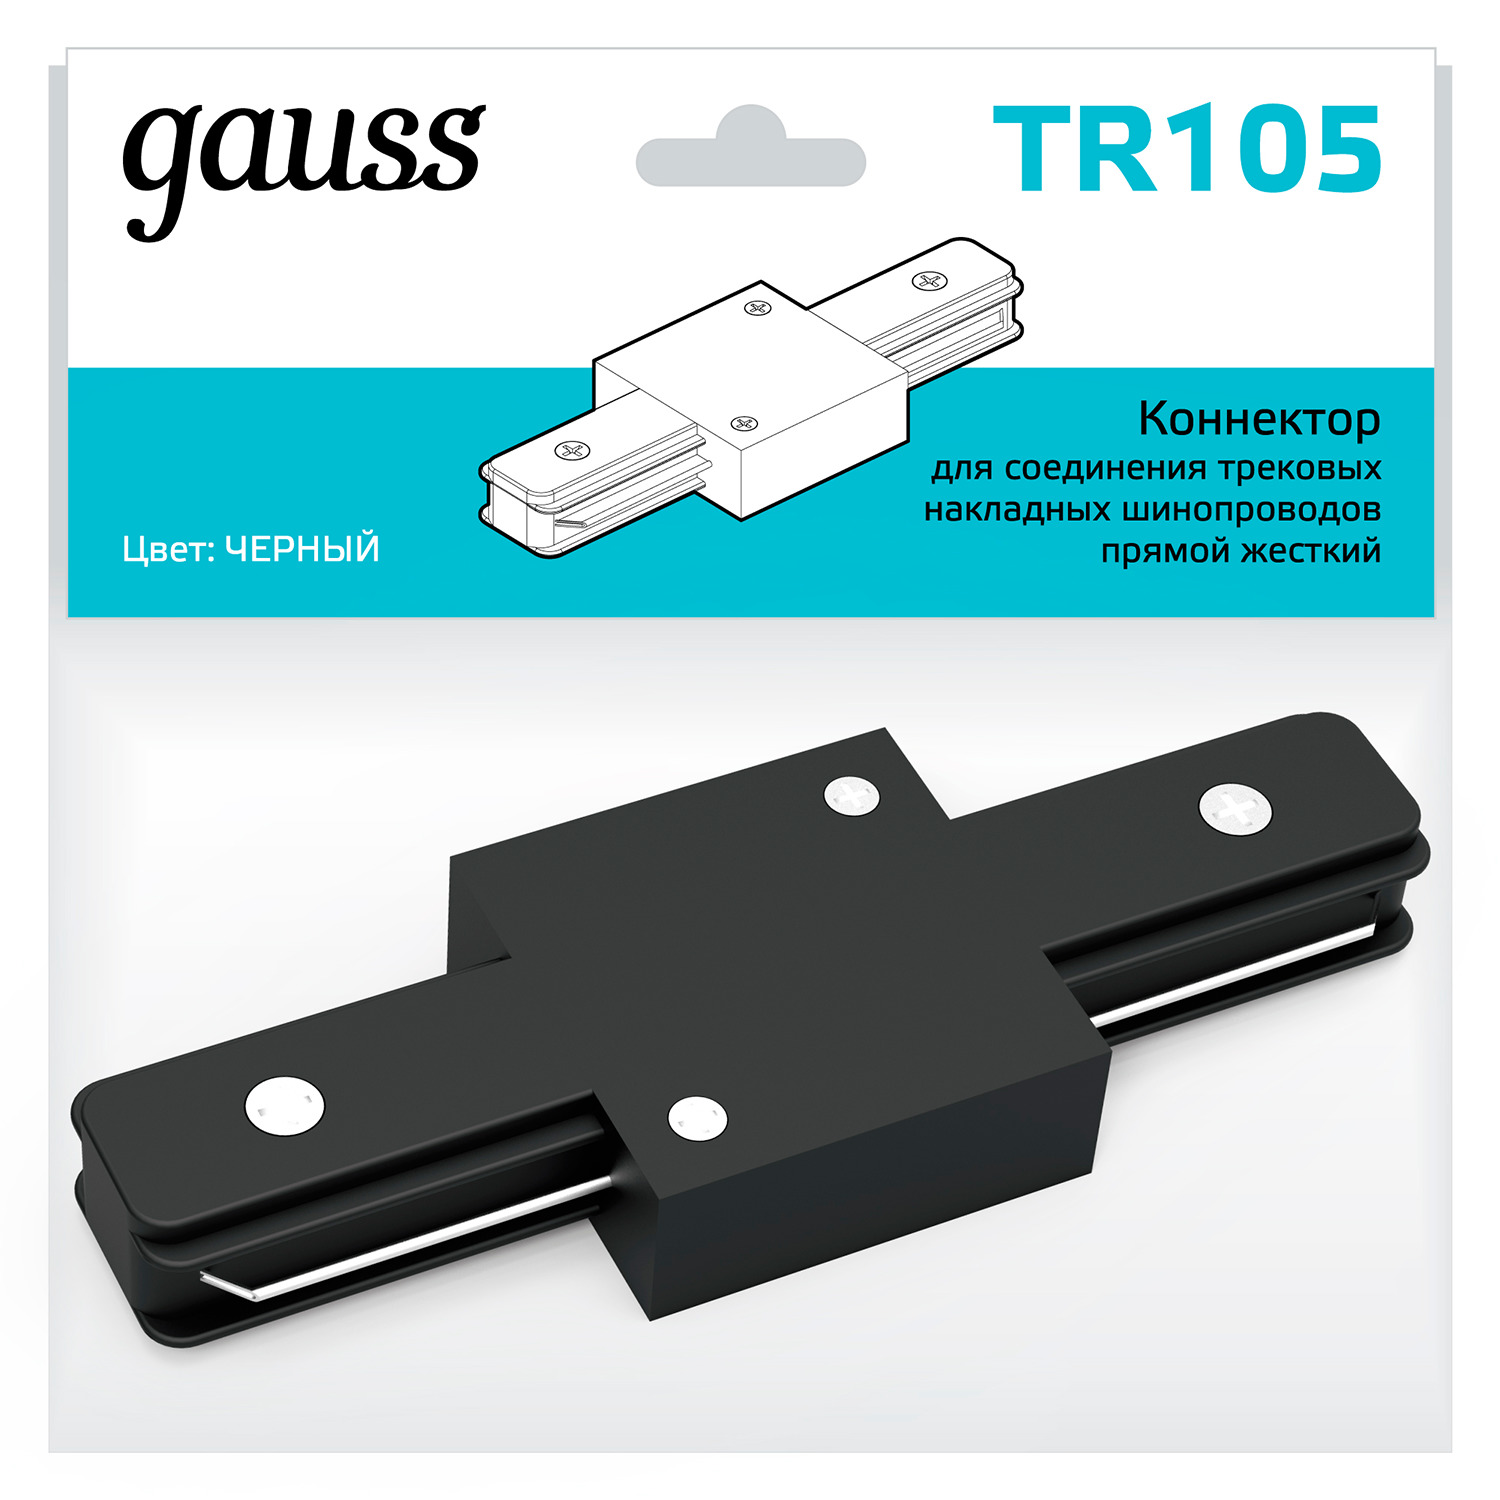 Коннектор Gauss для трековых шинопроводов прямой (I) черный коннектор gauss для встраиваемых трековых шинопроводов